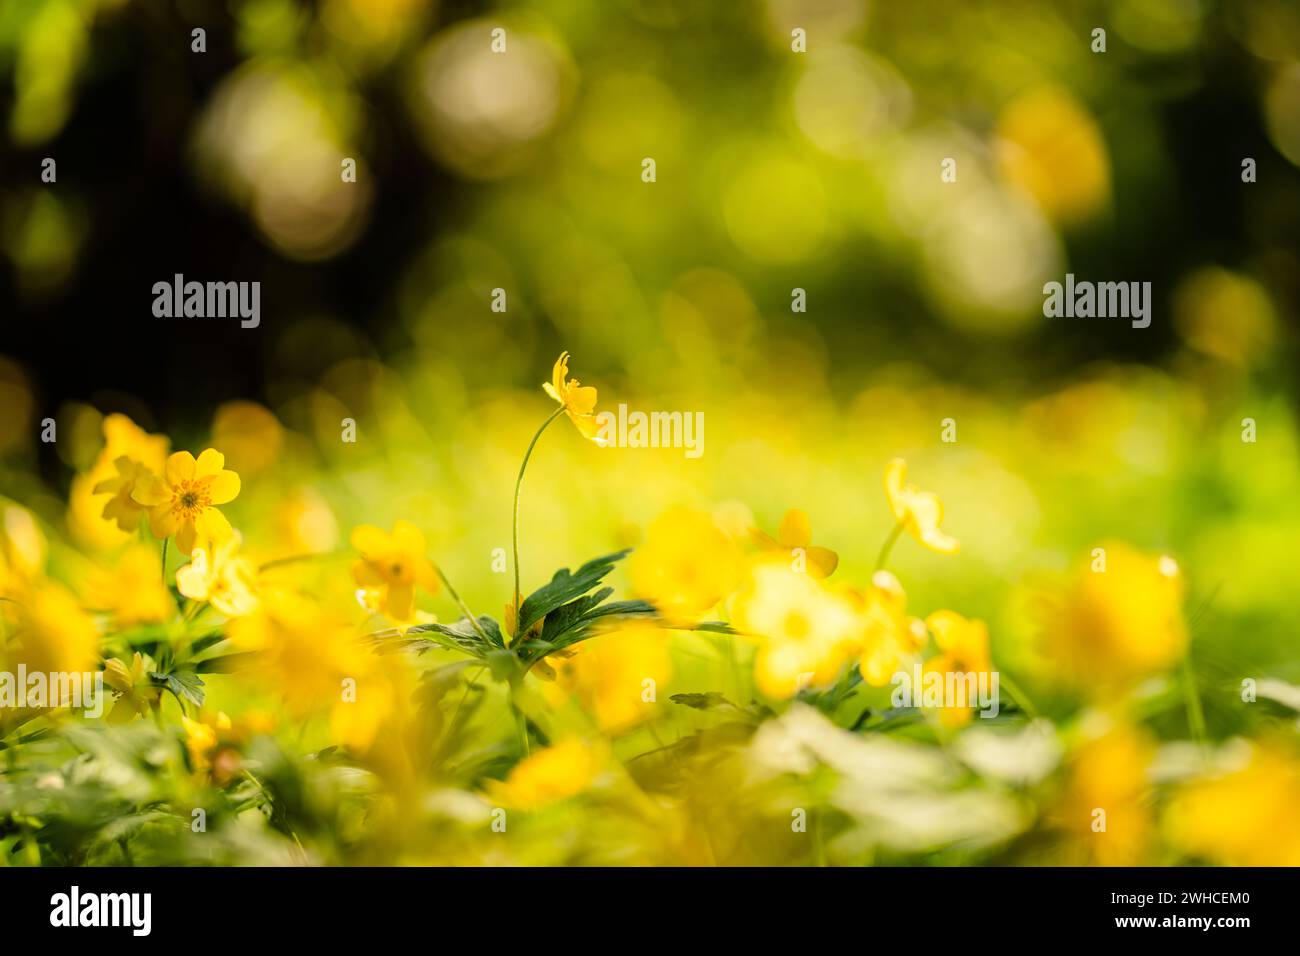 Holzanemone (Anemone) mit gelben Blüten im Frühjahr, bodennahe Perspektive, selektiver Fokus Stockfoto